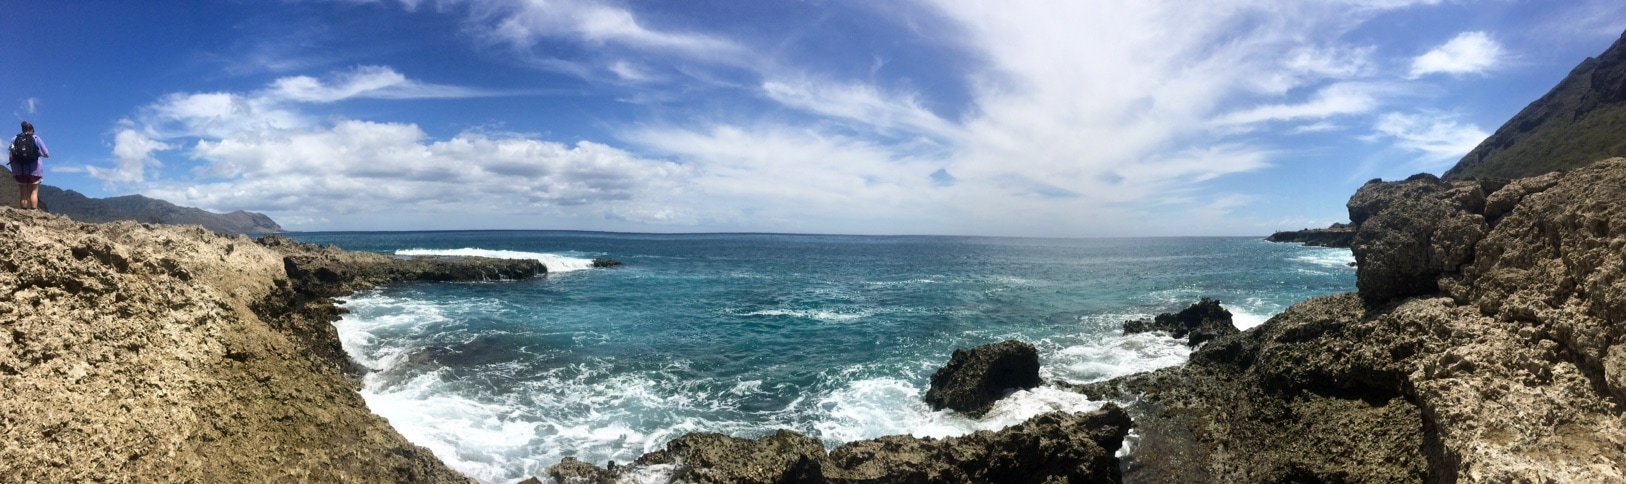 Panoramic view of Pacific Ocean